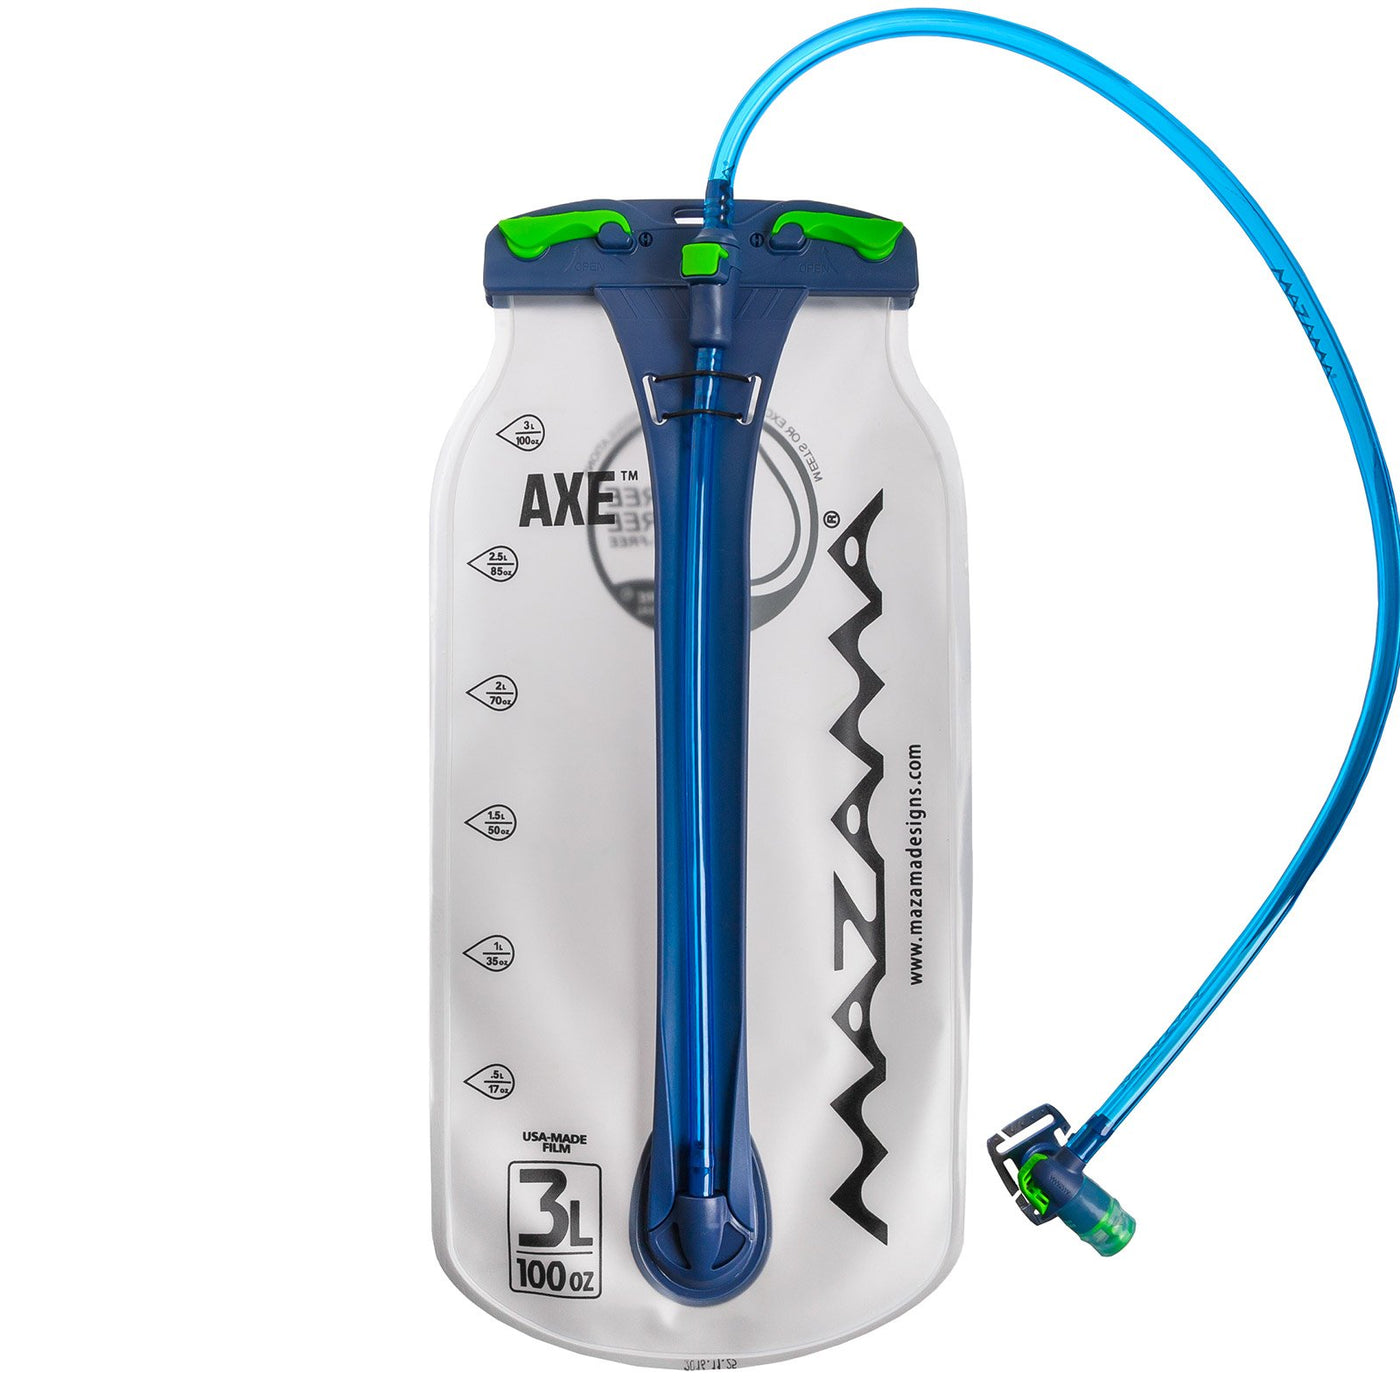 Mazama Designs AXE 3 Liter Short Hydration Reservoir